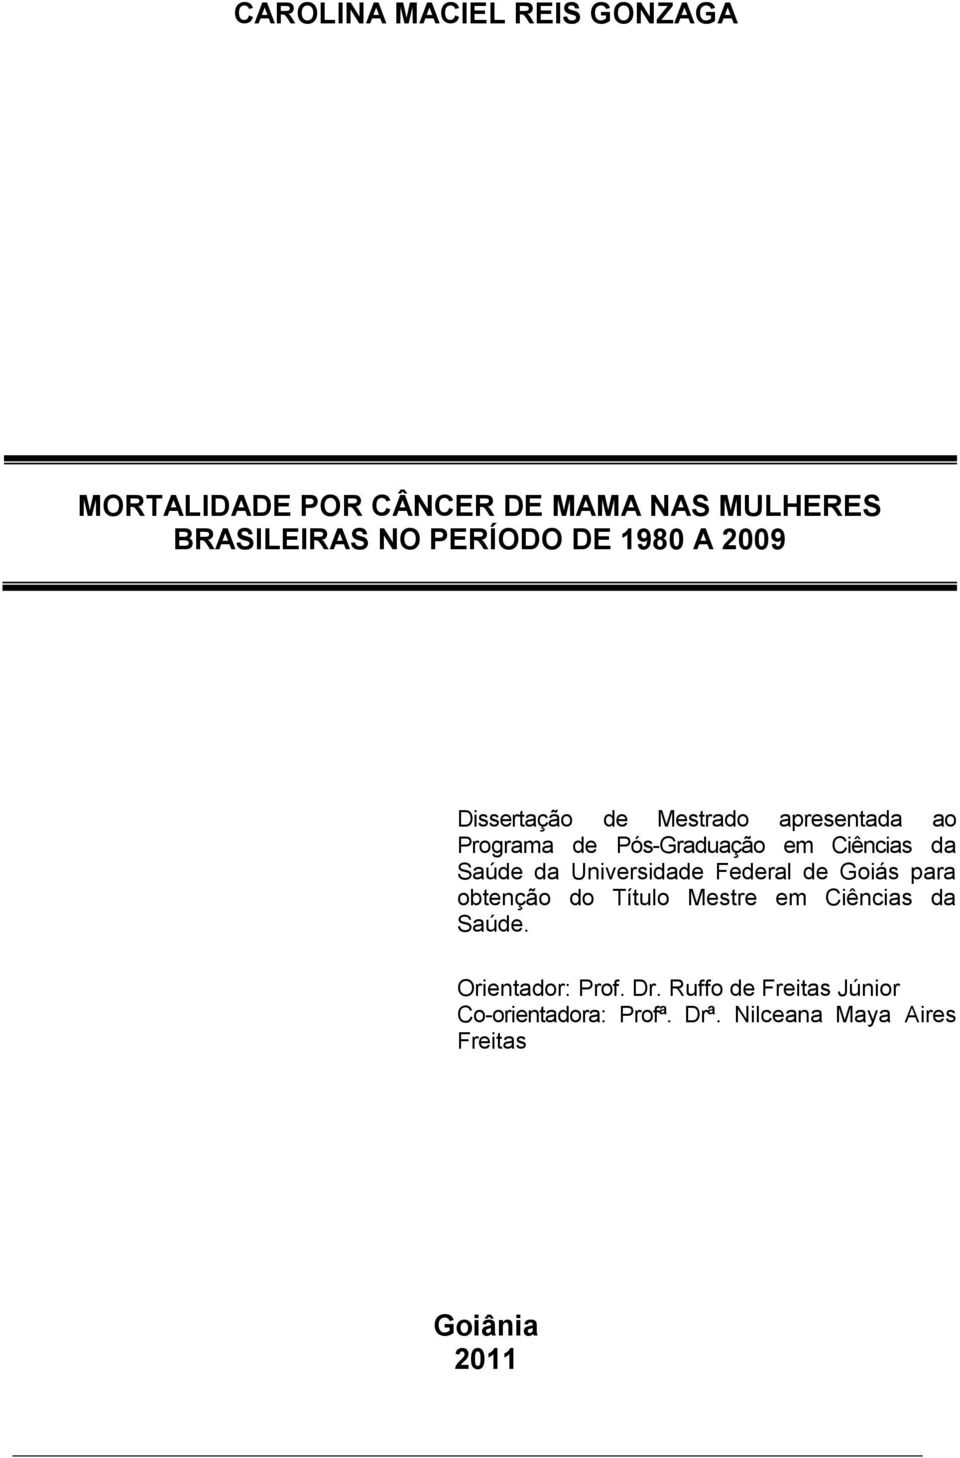 da Universidade Federal de Goiás para obtenção do Título Mestre em Ciências da Saúde.